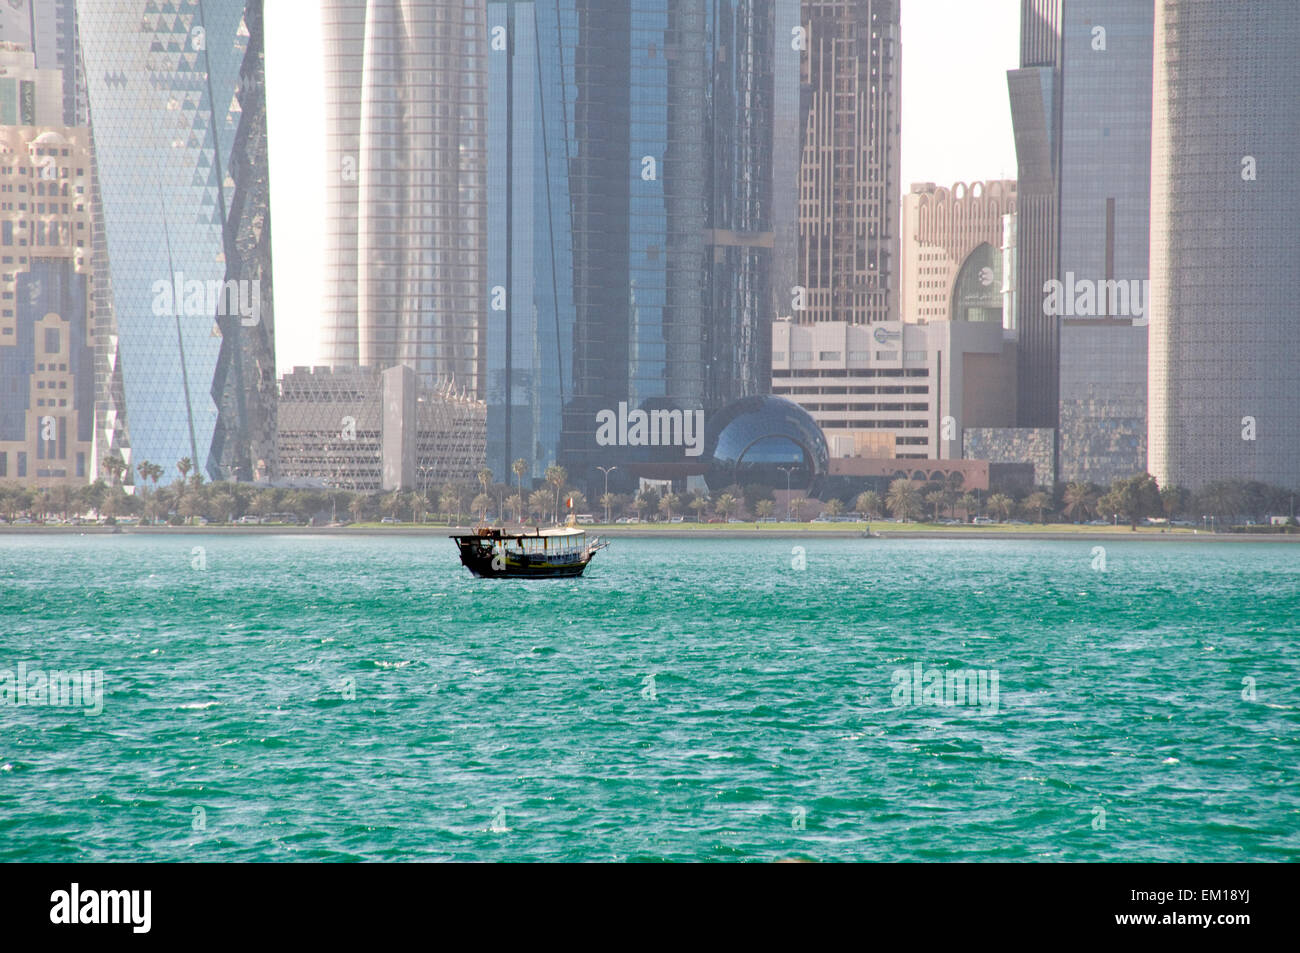 Un chasse-neige boutre les eaux du golfe Arabique près de l'horizon de Doha, capitale du pays du Golfe du Qatar. Banque D'Images